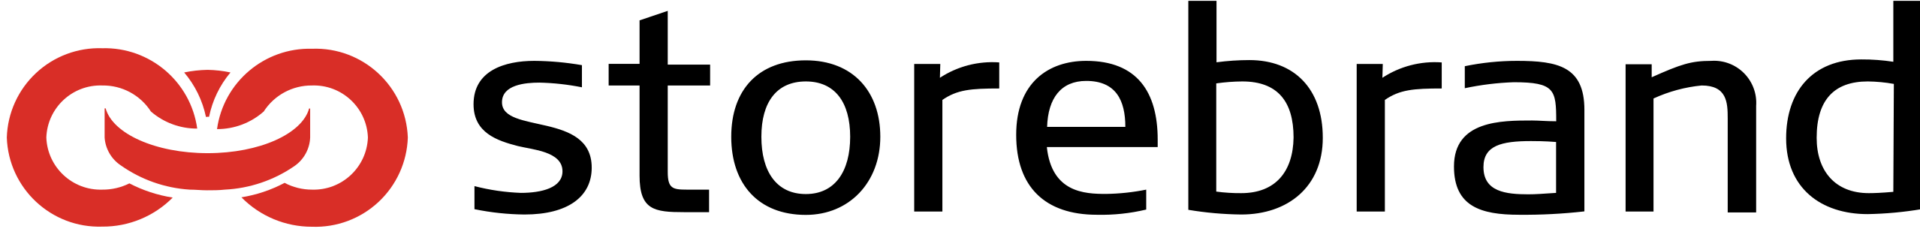 Storebrand_logo.svg